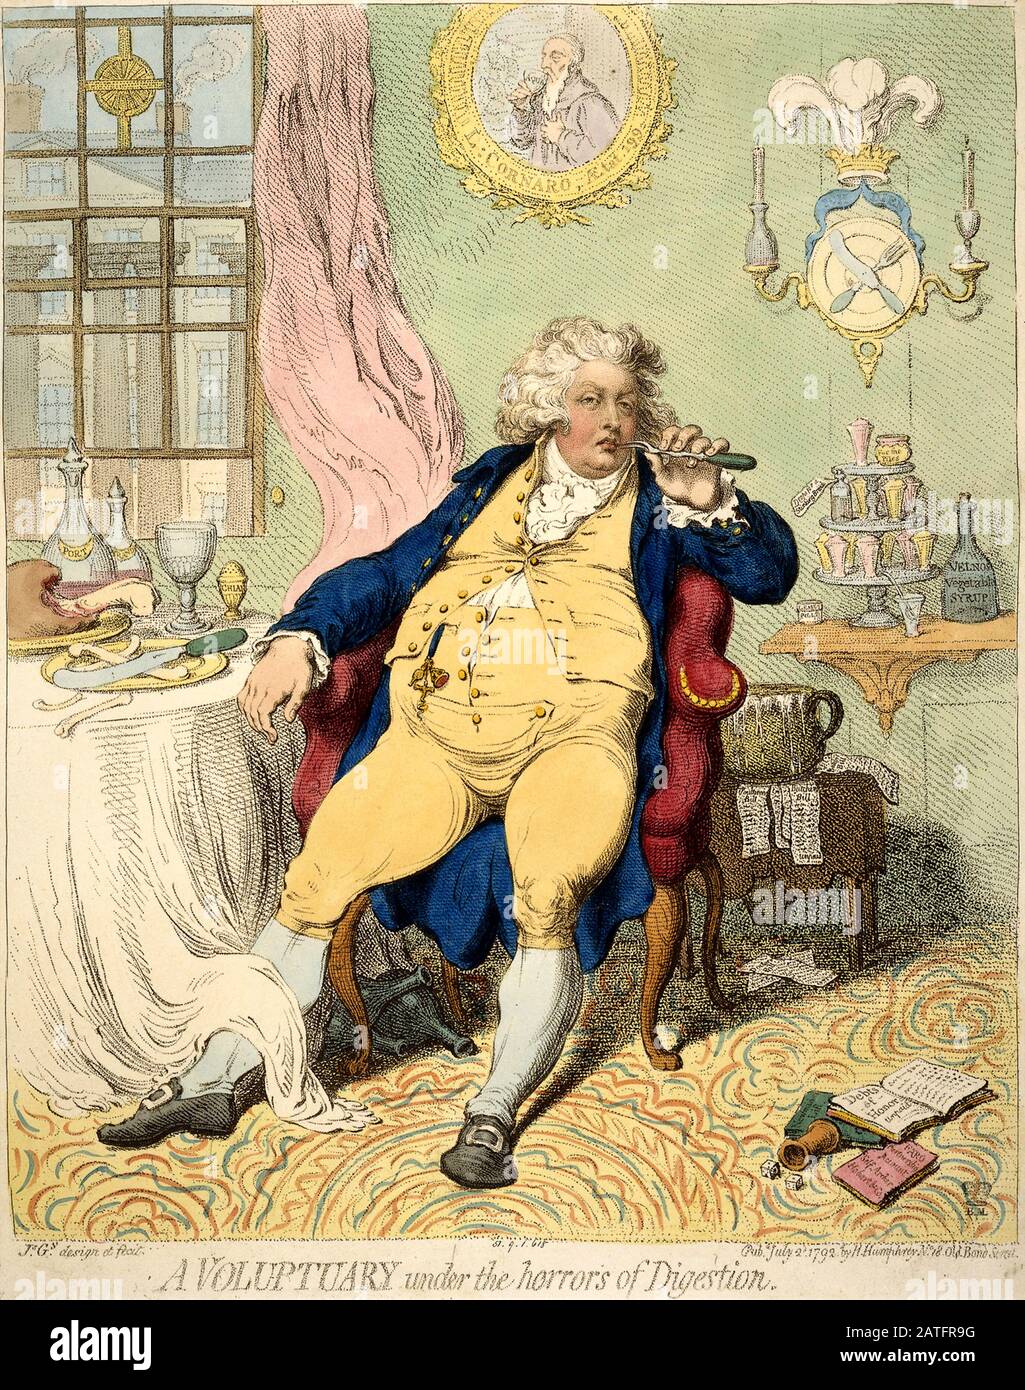 'A Voluptuary Under The Horrors of Verdauung': 1792er Karikatur von James Gillray aus Georgs Zeit als Prince of Wales. Karikatur von George IV als Prince of Wales, mit Erschöpfung geschmachtet, in einem Armstuhl zurückgelehnt, an einem Tisch, der mit Resten einer Mahlzeit bedeckt ist und eine Gabel an seinem Mund hält. Seine Weste wird mit einem einzigen Knopf über seinen distandeten Bauch zusammengehalten. Im Hintergrund ist das drei Straußenfedern-Emblem des Prince of Wales über einem Messer und einer auf einer Platte gekreuzten Gabel (anstelle eines Wappens) abgebildet. Stockfoto